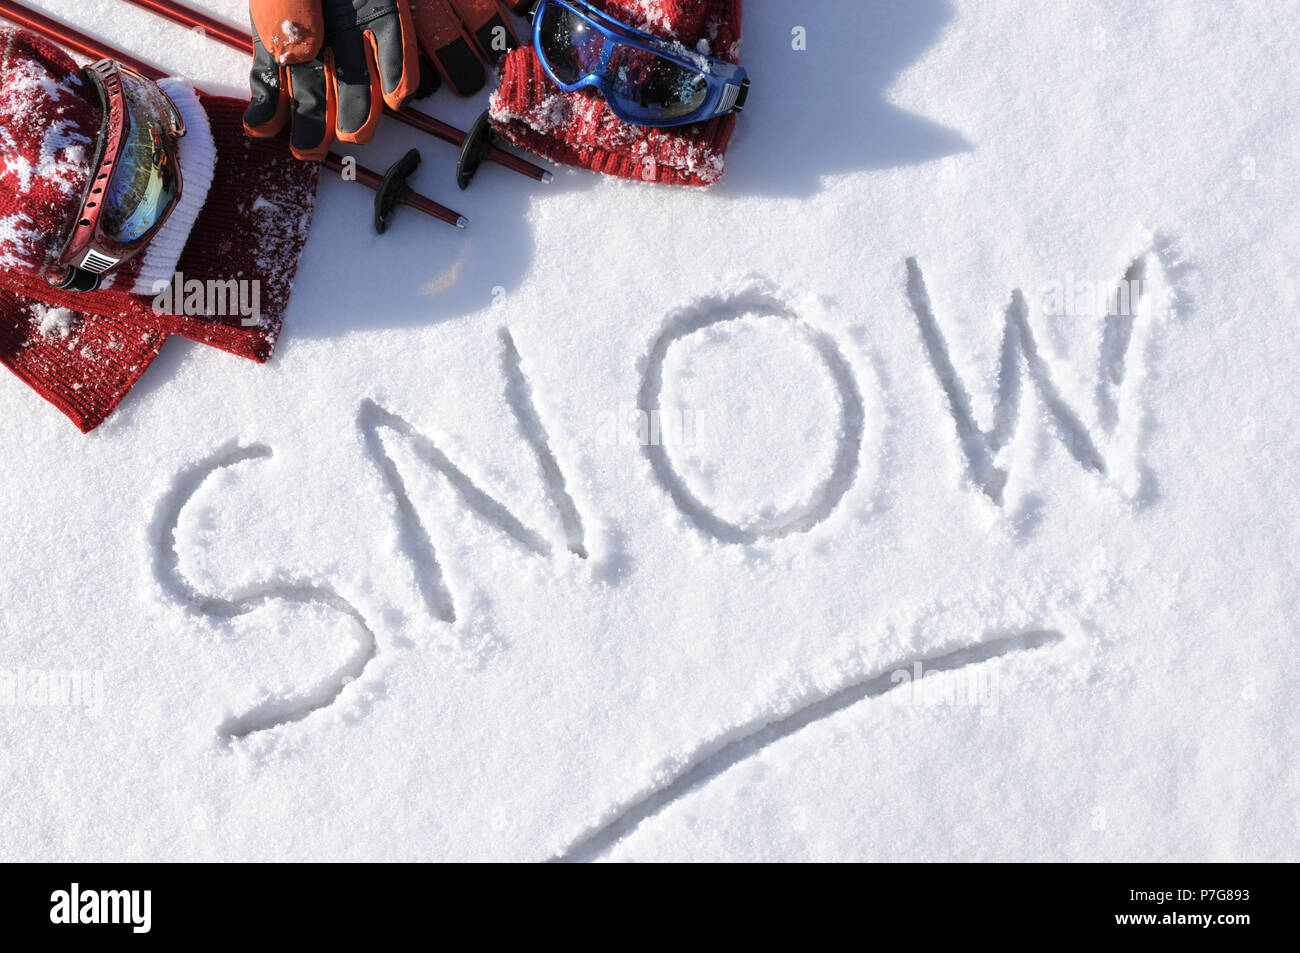 Das Wort Schnee im Schnee mit Ski Stöcke, Schutzbrille und Hüte geschrieben. Stockfoto